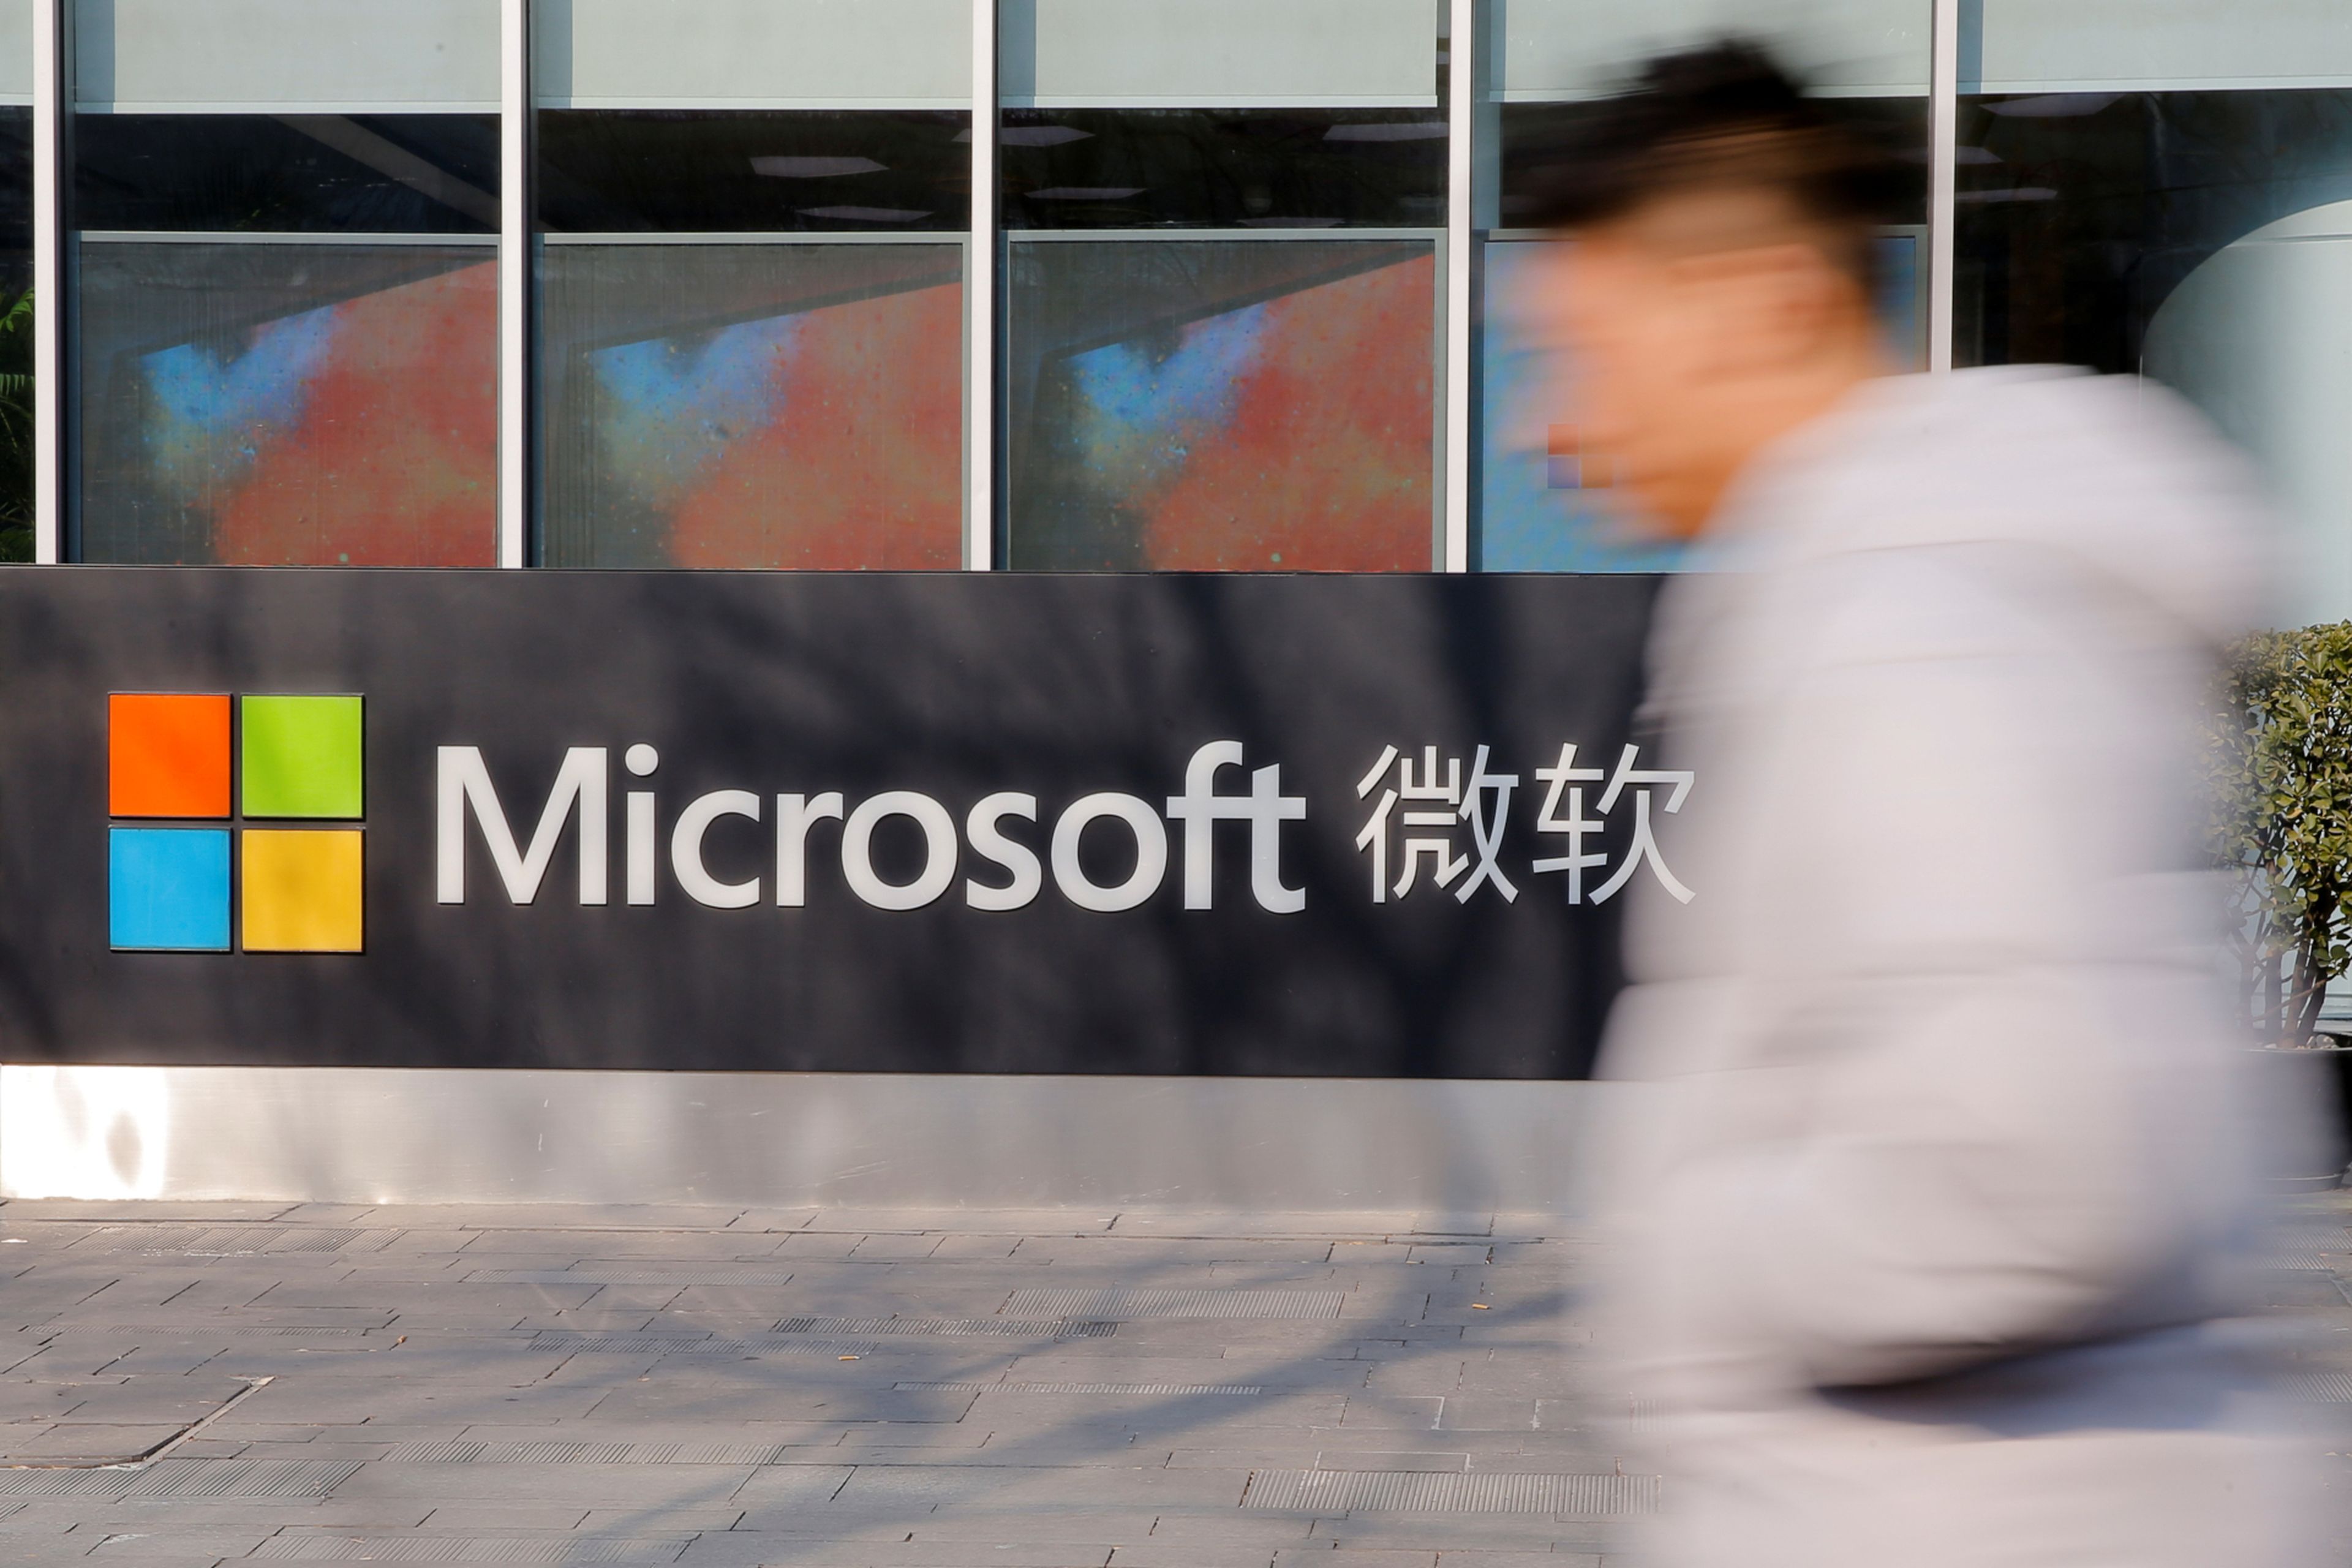 La fachada de la sede de Microsoft en Pekín